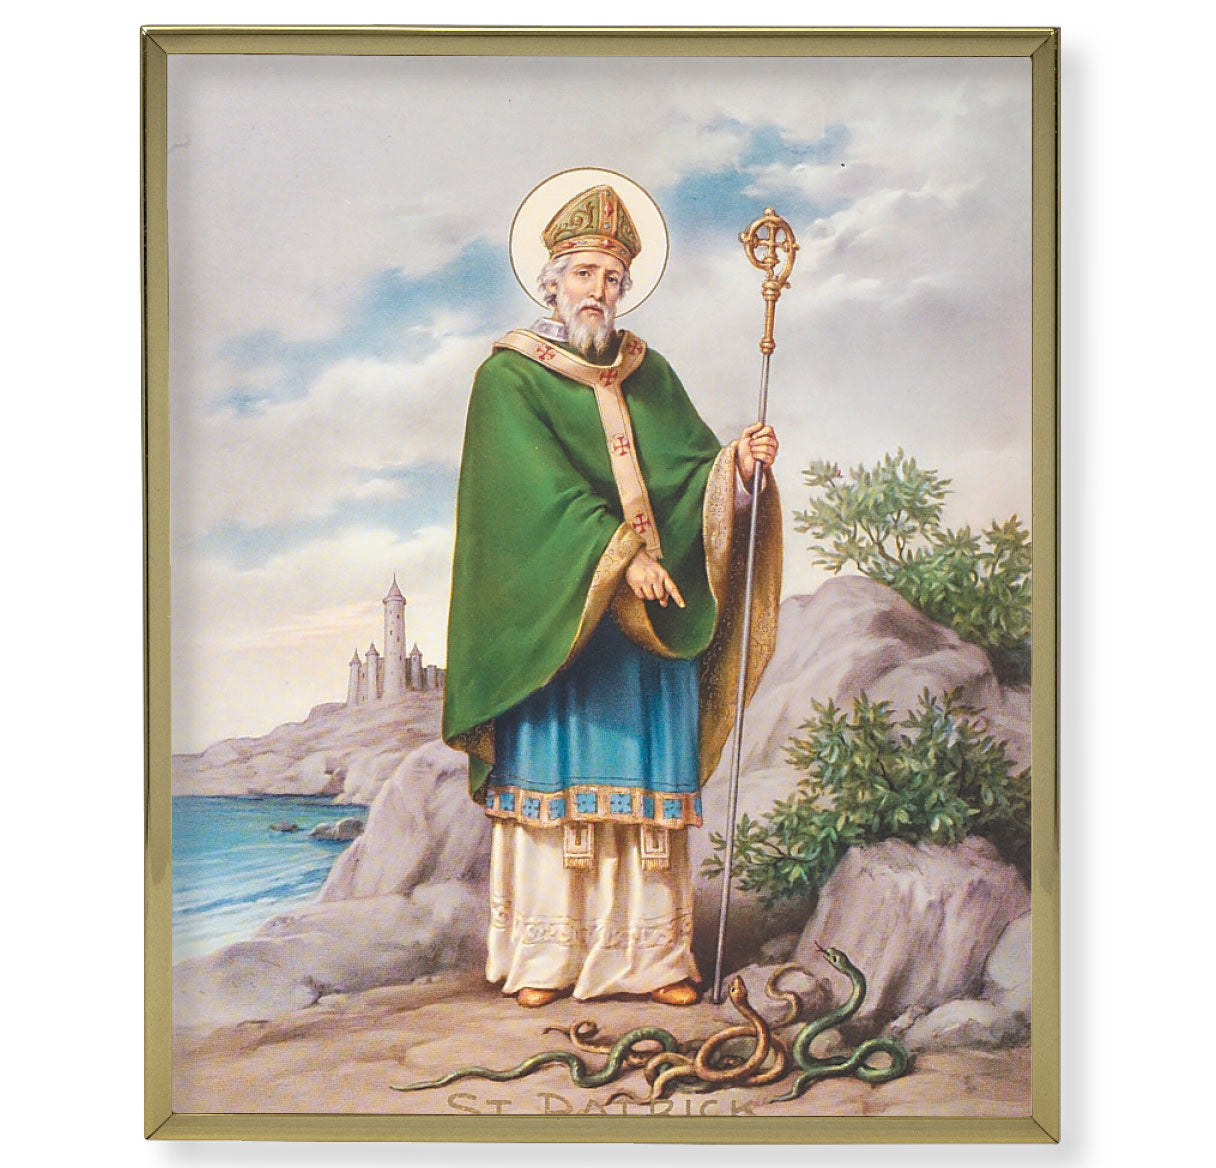 St. Patrick Gold Framed Plaque Art